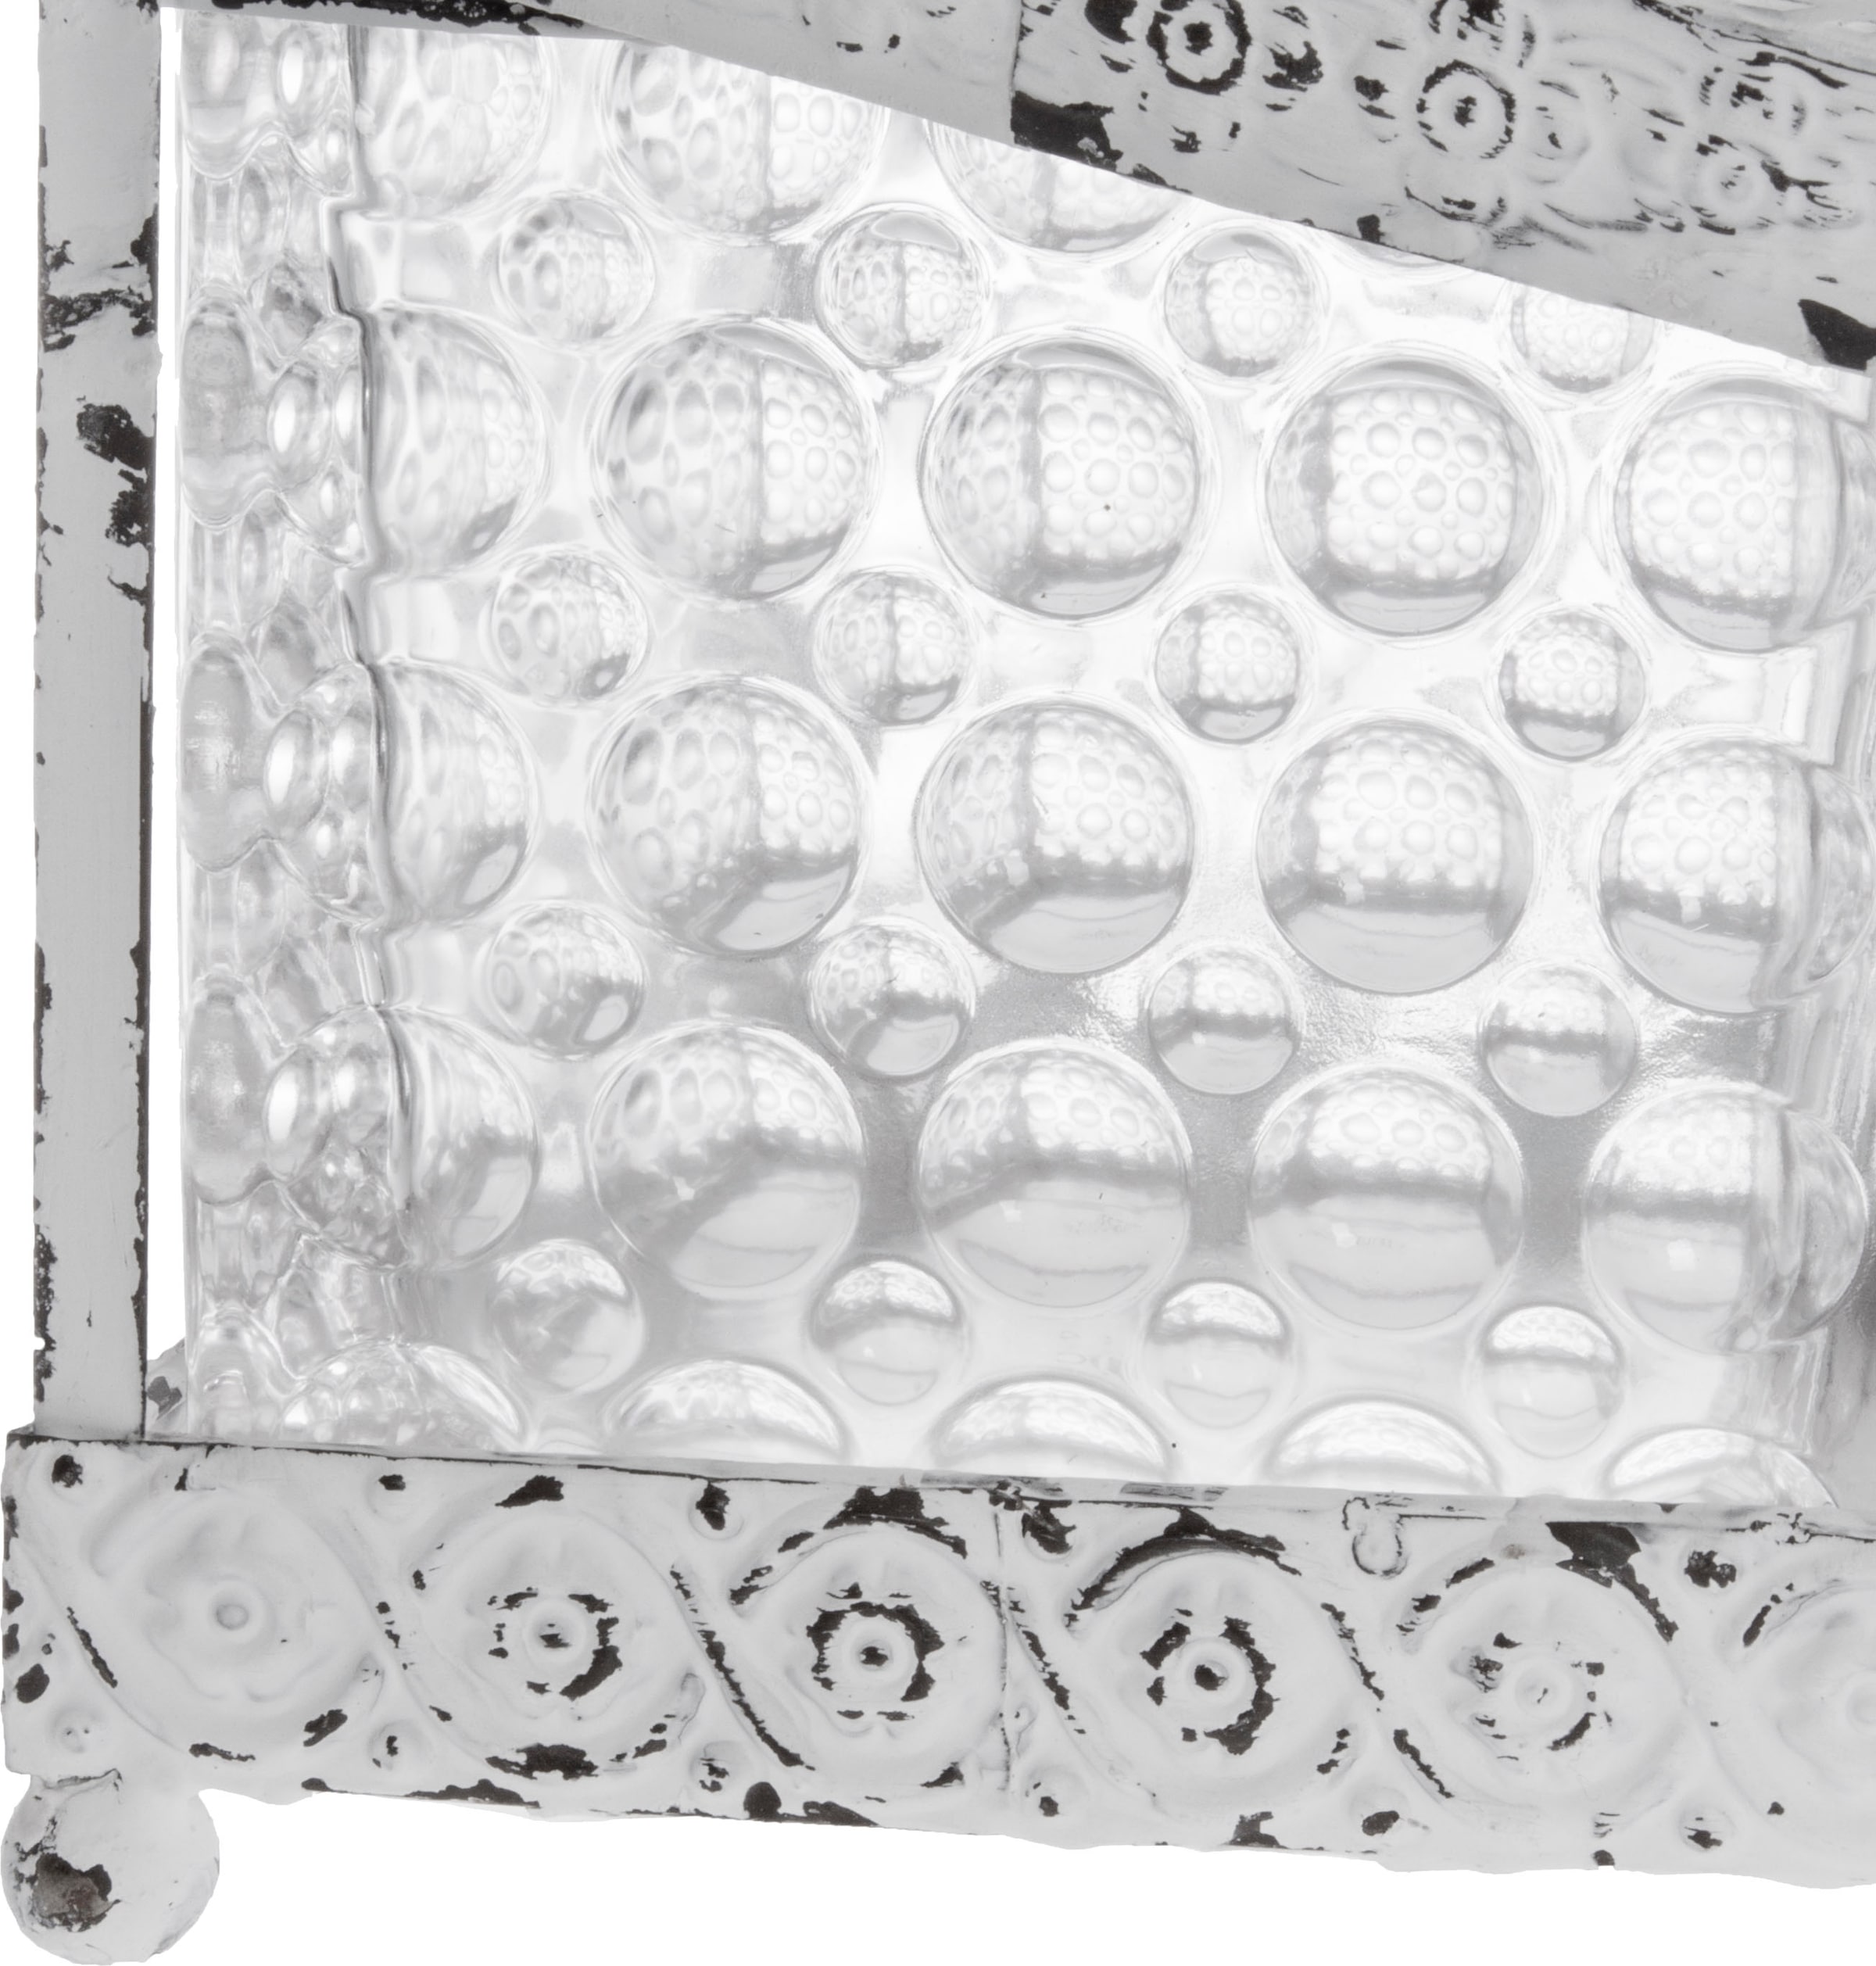 Myflair Möbel & Accessoires Aufbewahrungsbox »Leyla, weiß«, aus Metall & Glas, mit Deckel